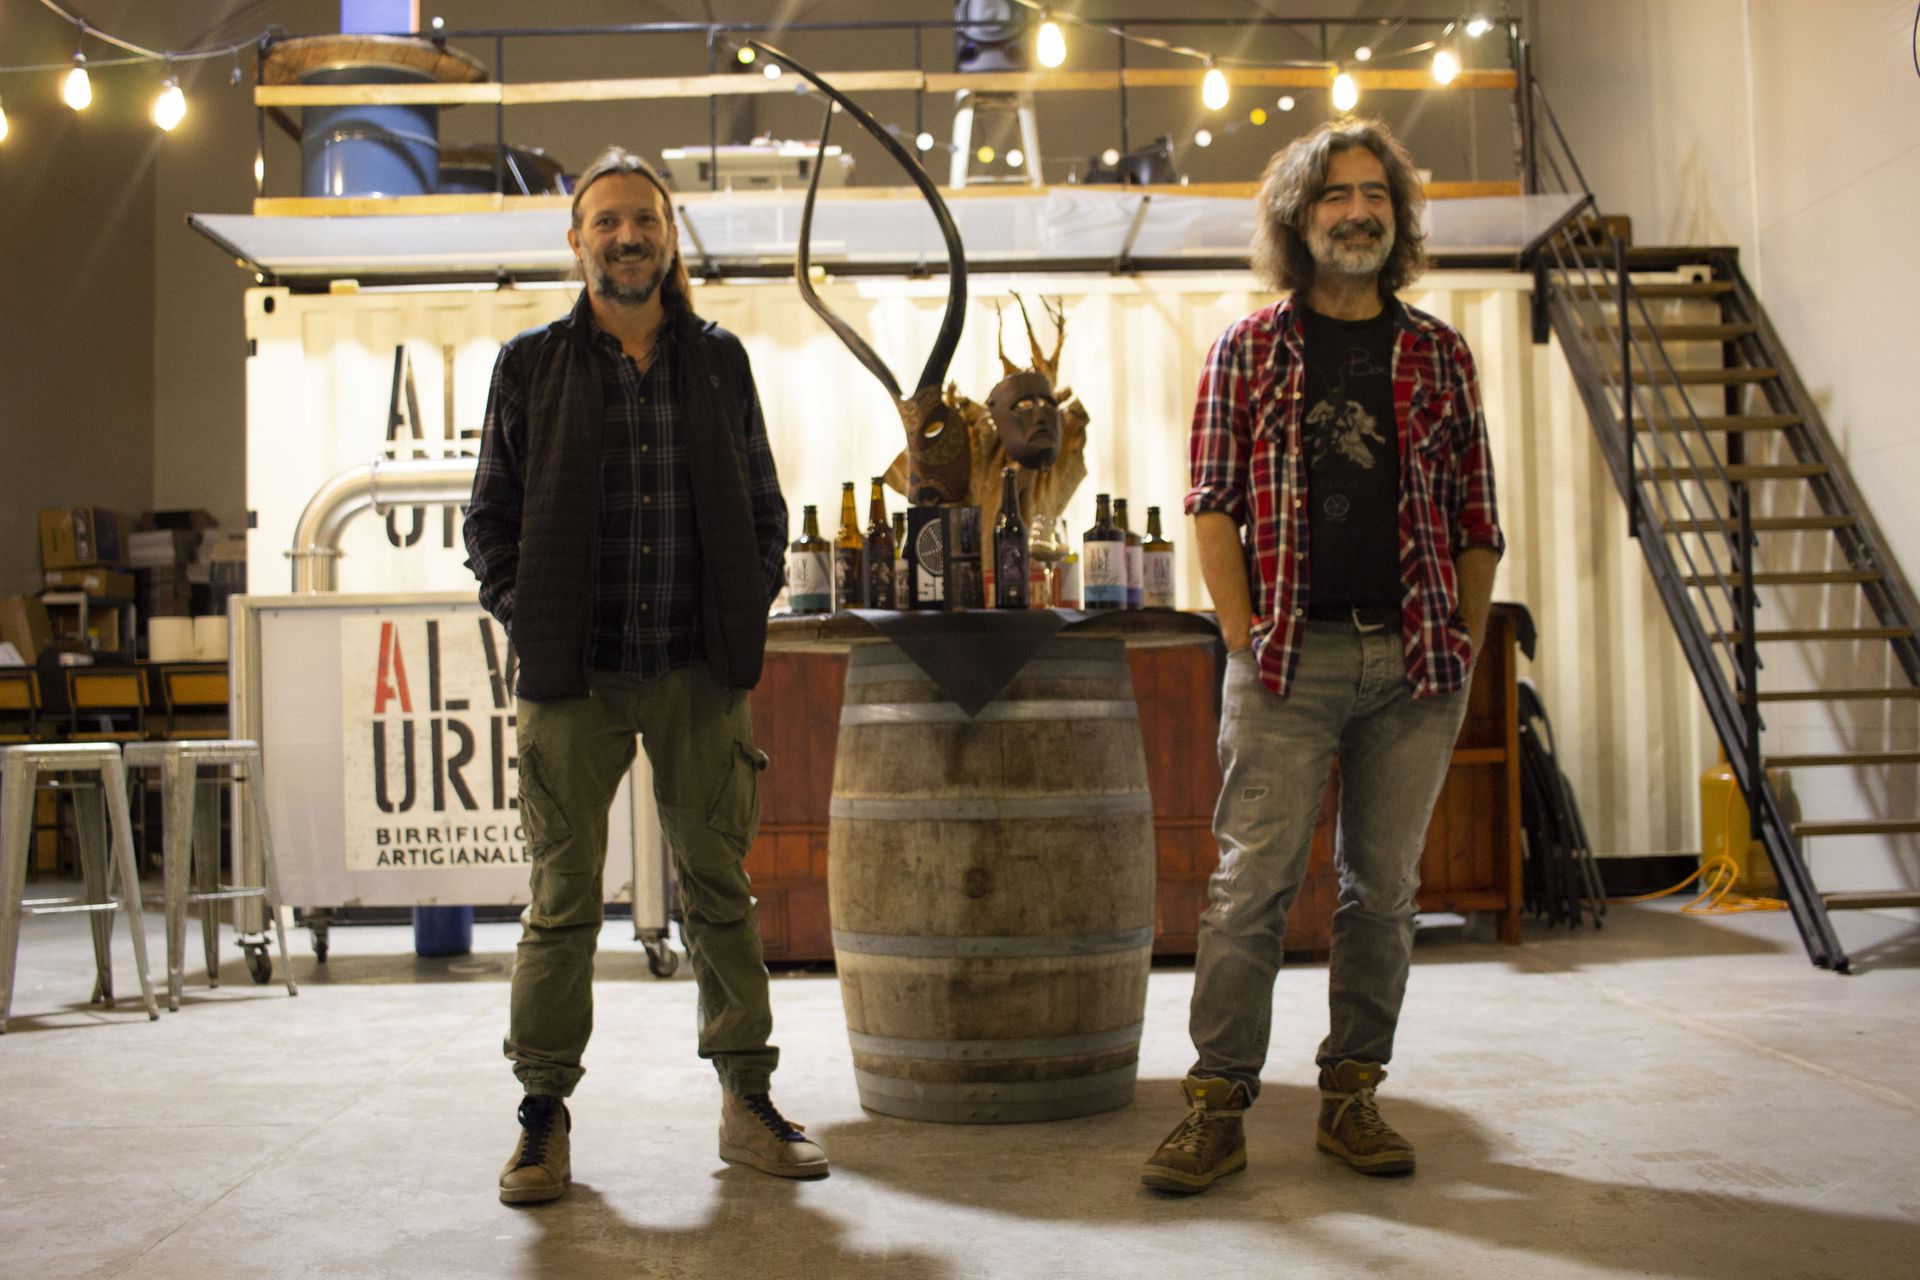 Pino e Diego produttori di birra sarda presso Alvure